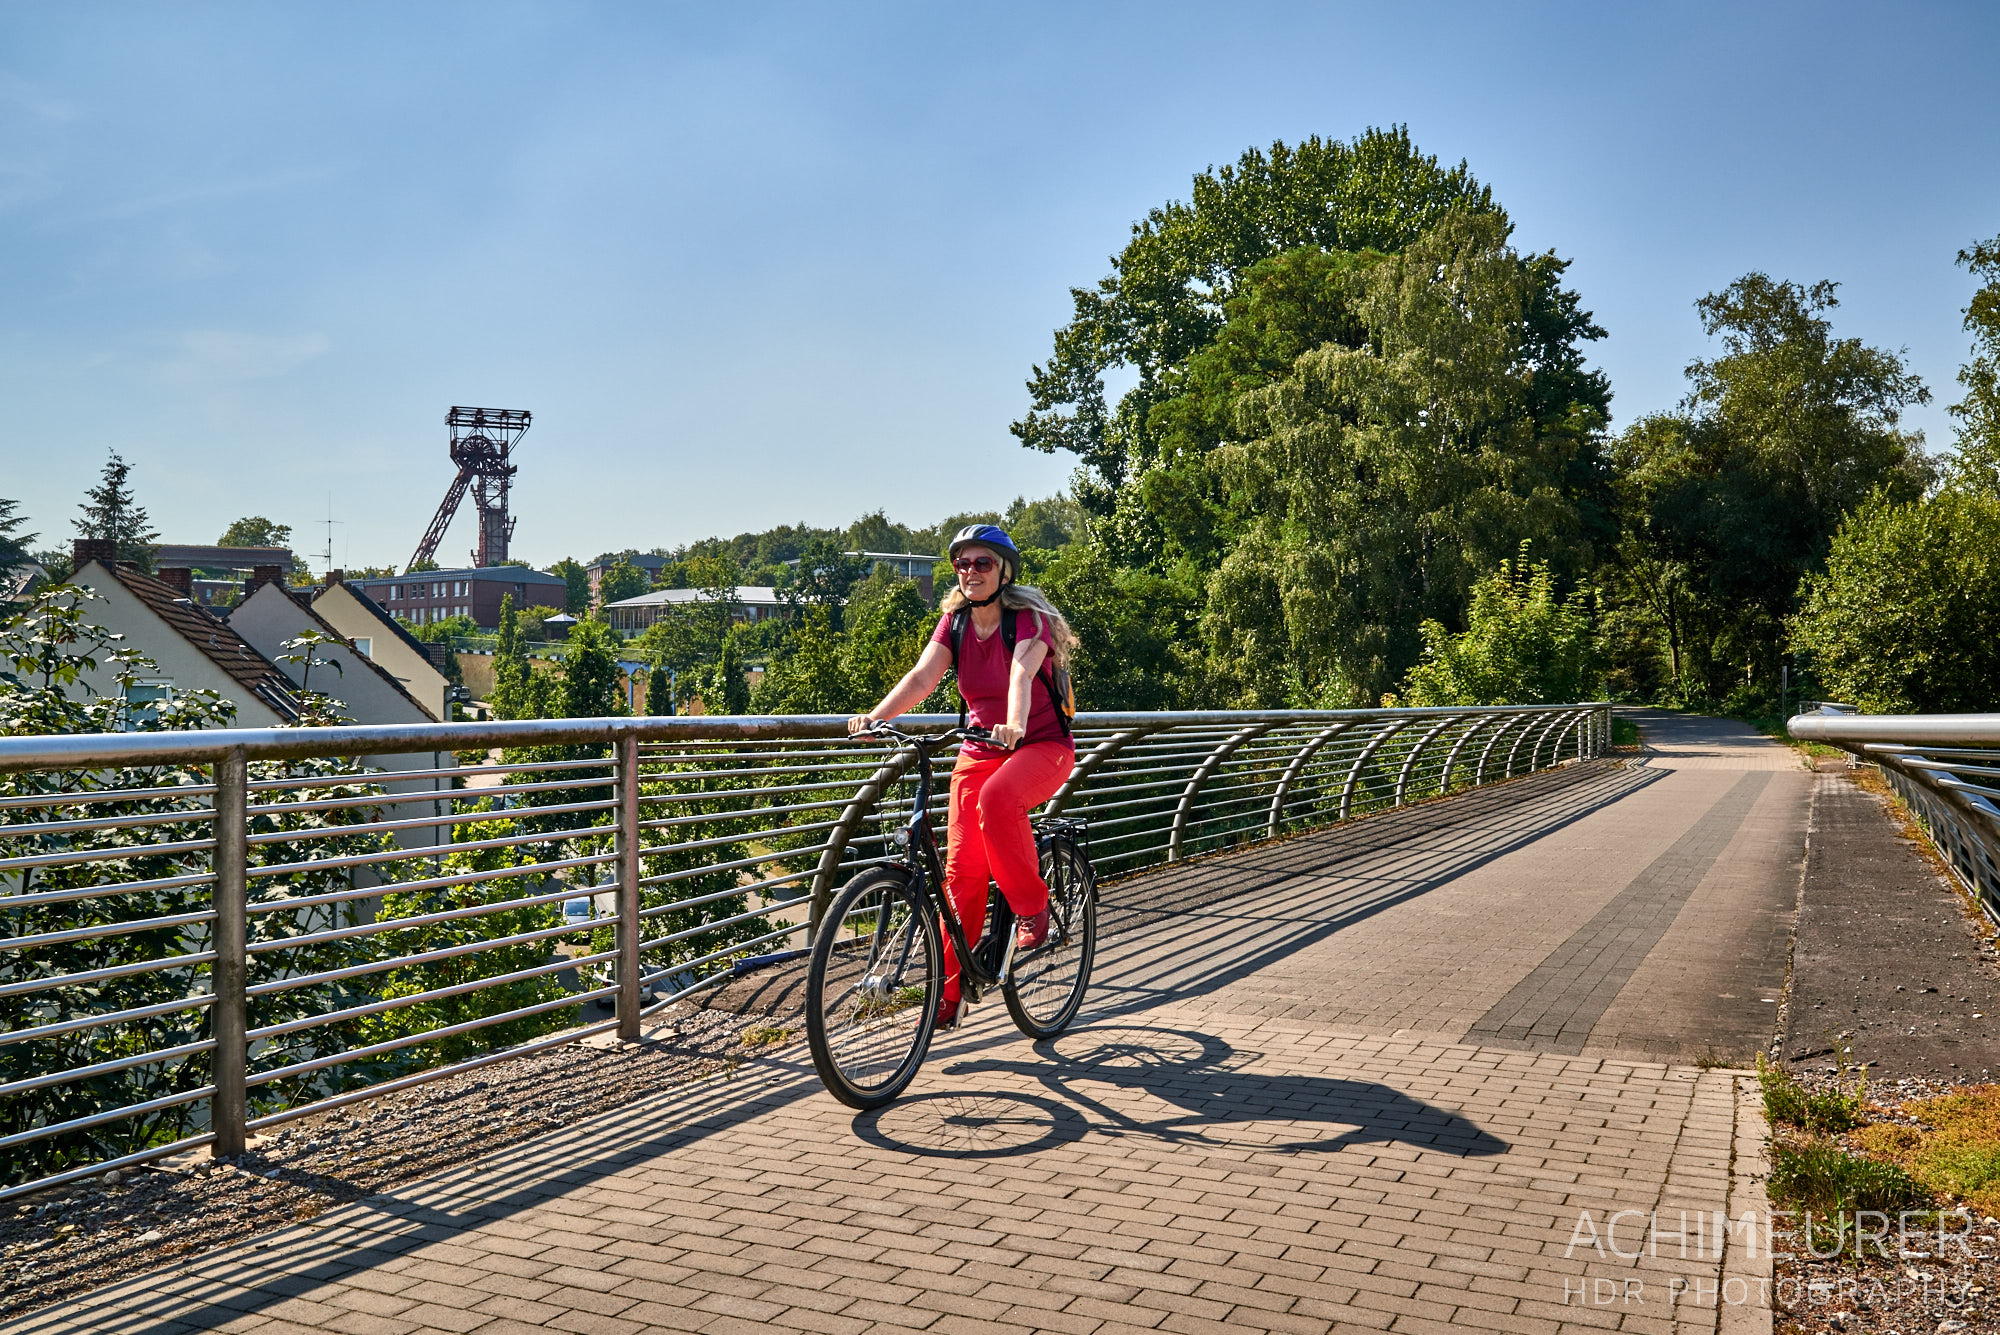 Radfahren im Ruhrgebiet, auf der alten Erzbahn